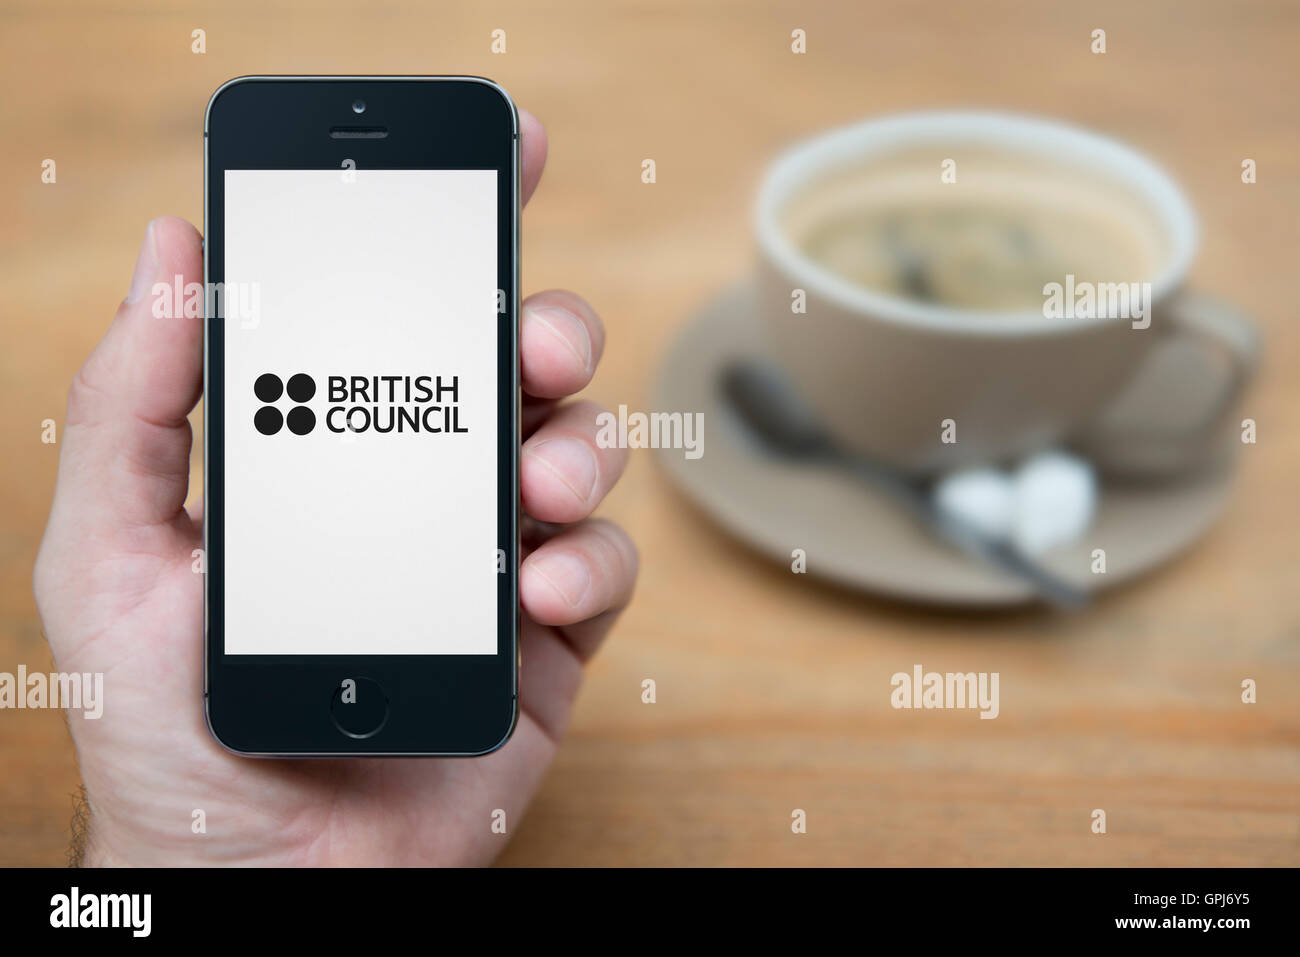 Un uomo guarda al suo iPhone che visualizza il British Council logo, mentre sat con una tazza di caffè (solo uso editoriale). Foto Stock